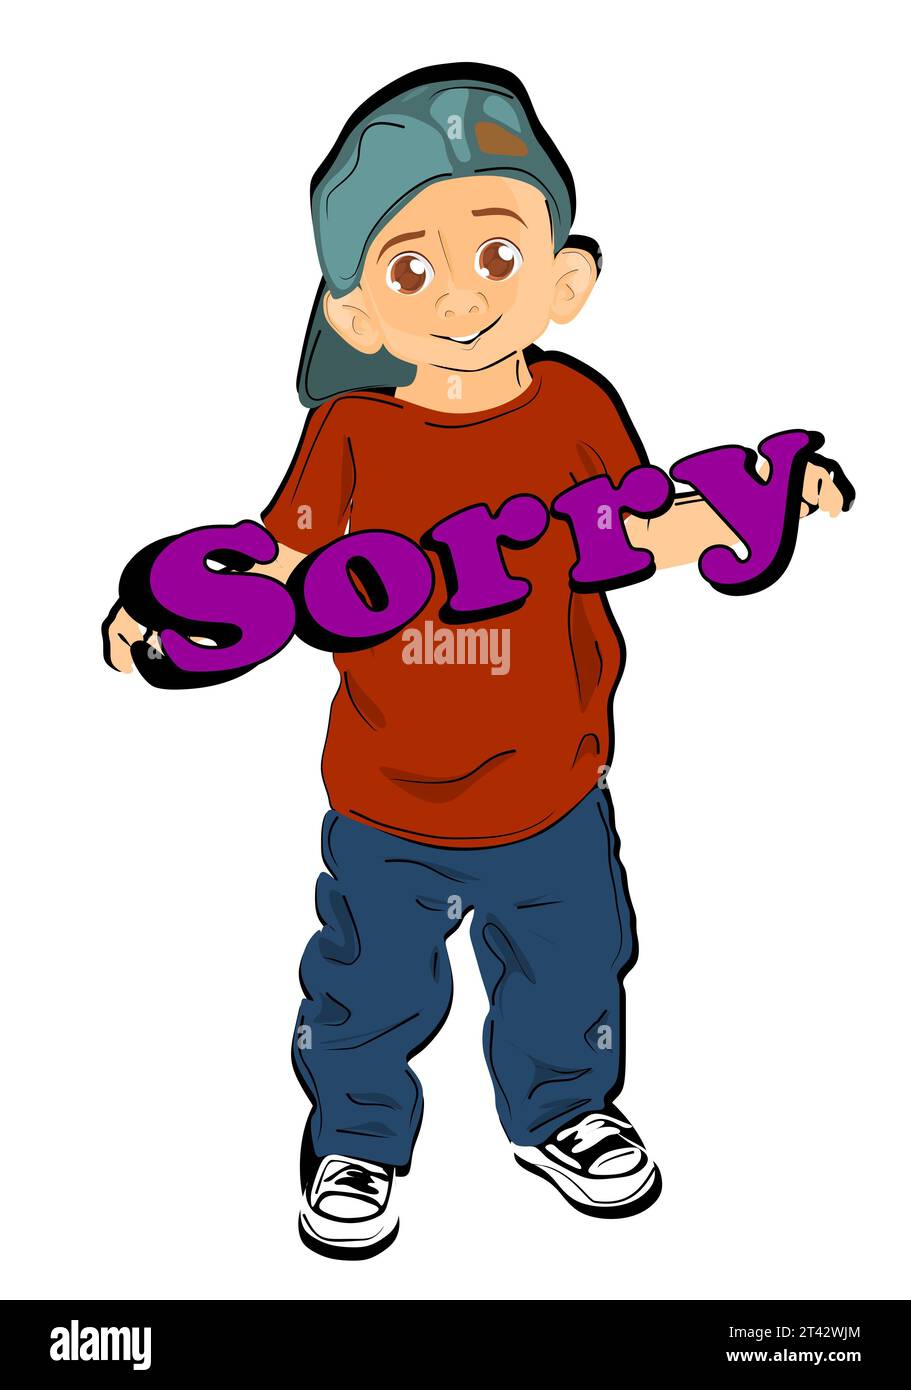 boy say = i am sorry Stock Photo